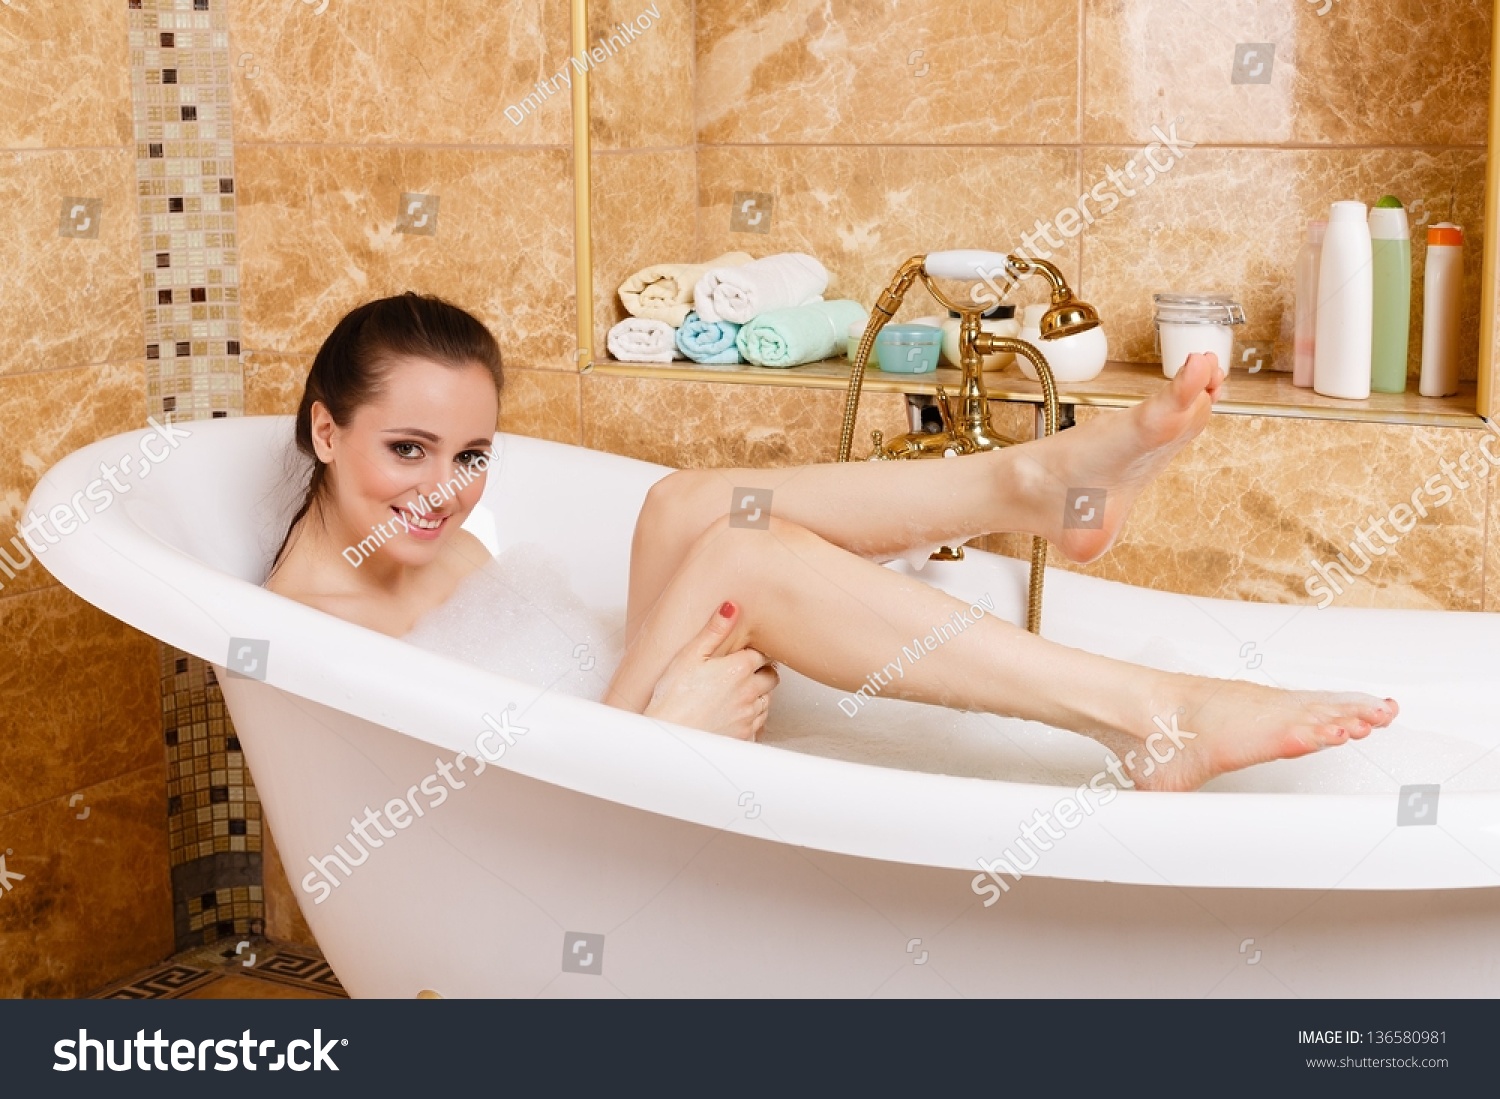 Жена моет ванну. Девчонки в ванной. Женщина в ванной. Красивая девушка в ванной комнате. Женщина лежит в ванной.